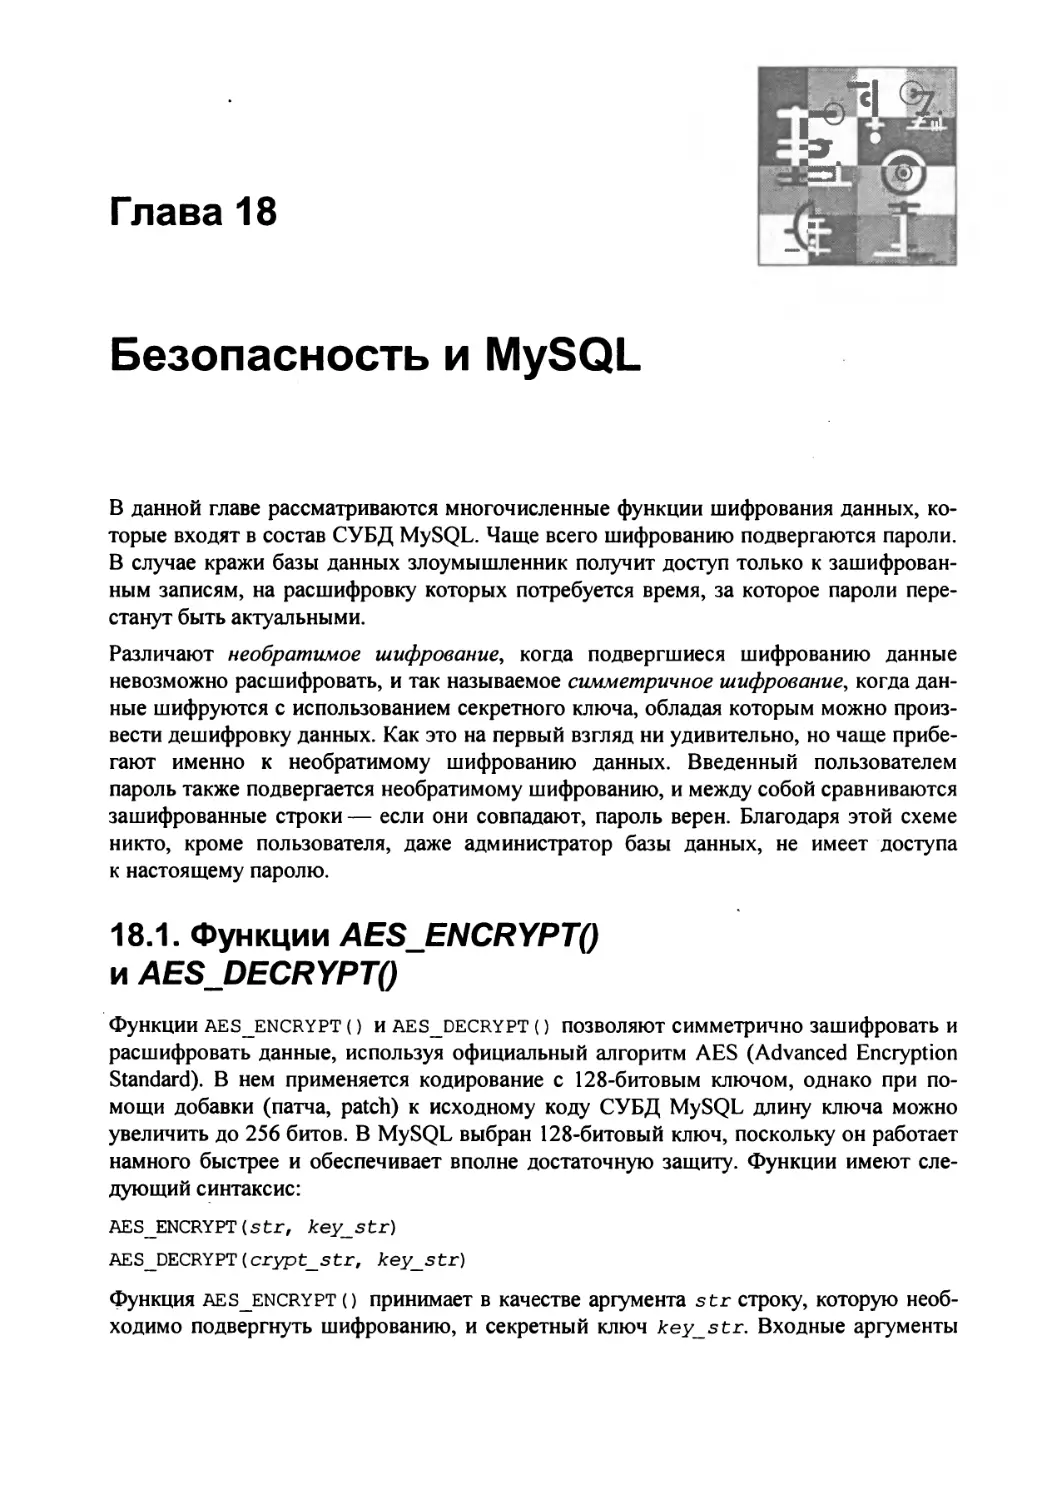 Глава 18. Безопасность и MySQL
